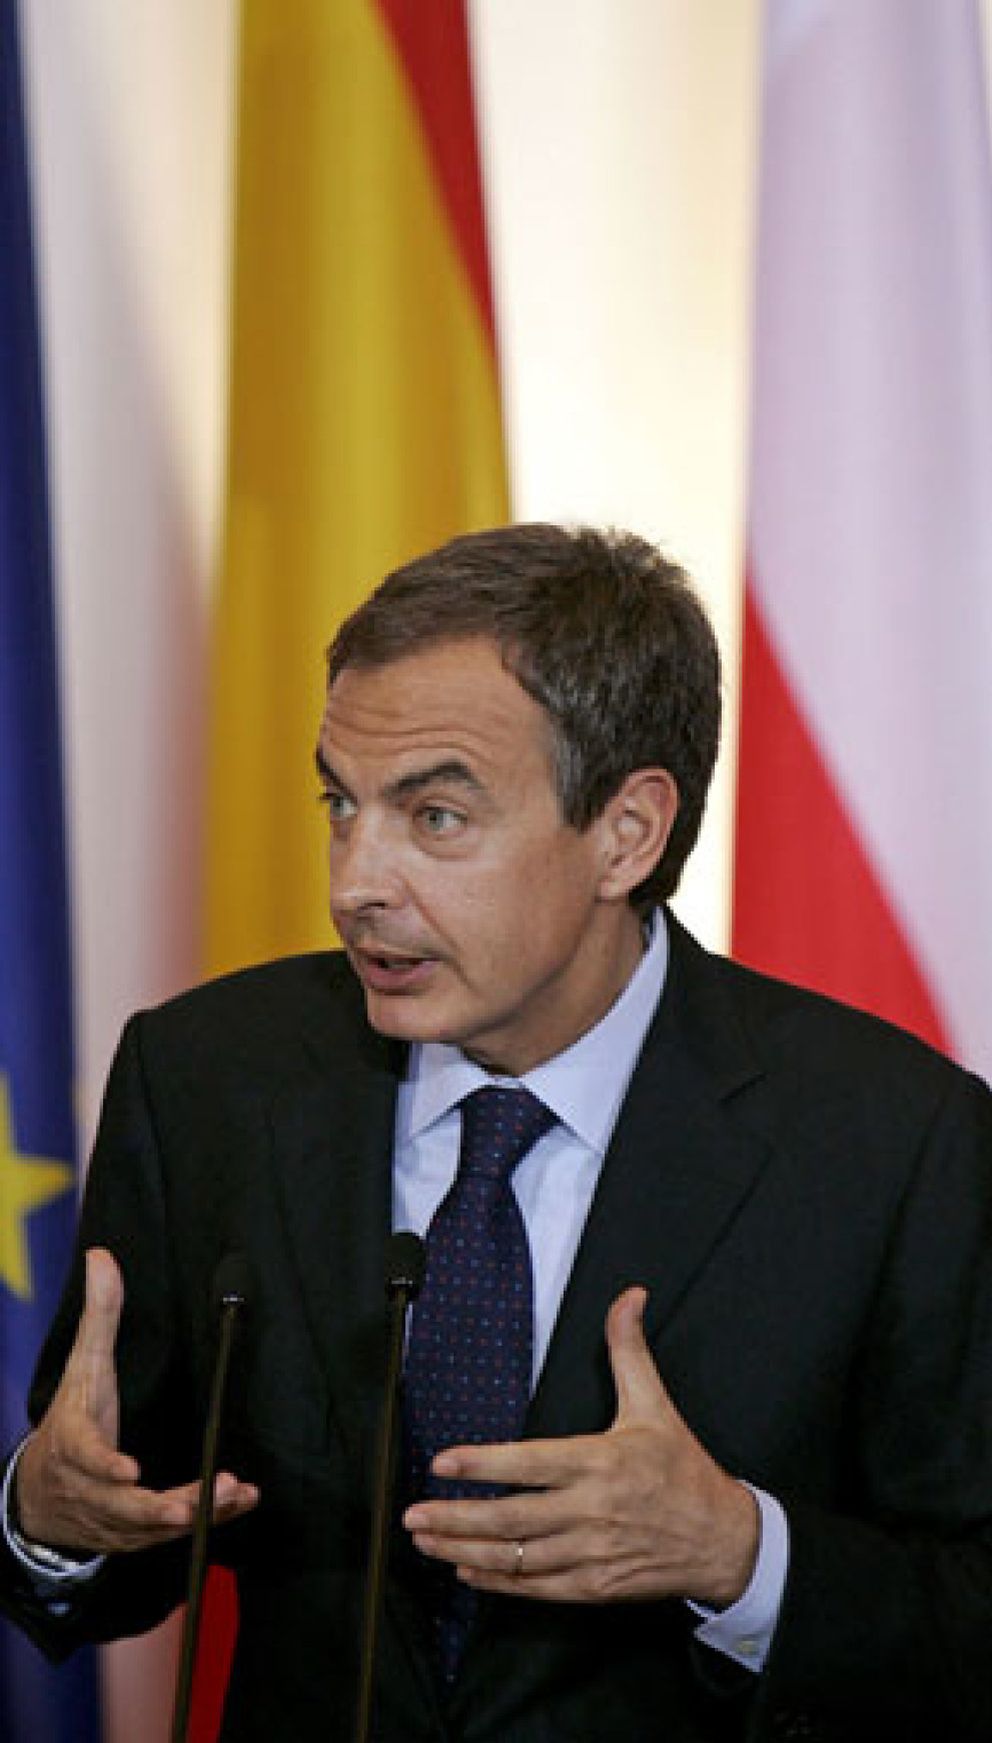 Foto: Zapatero exige prudencia a los medios al informar sobre el secuestro del 'Alakrana'